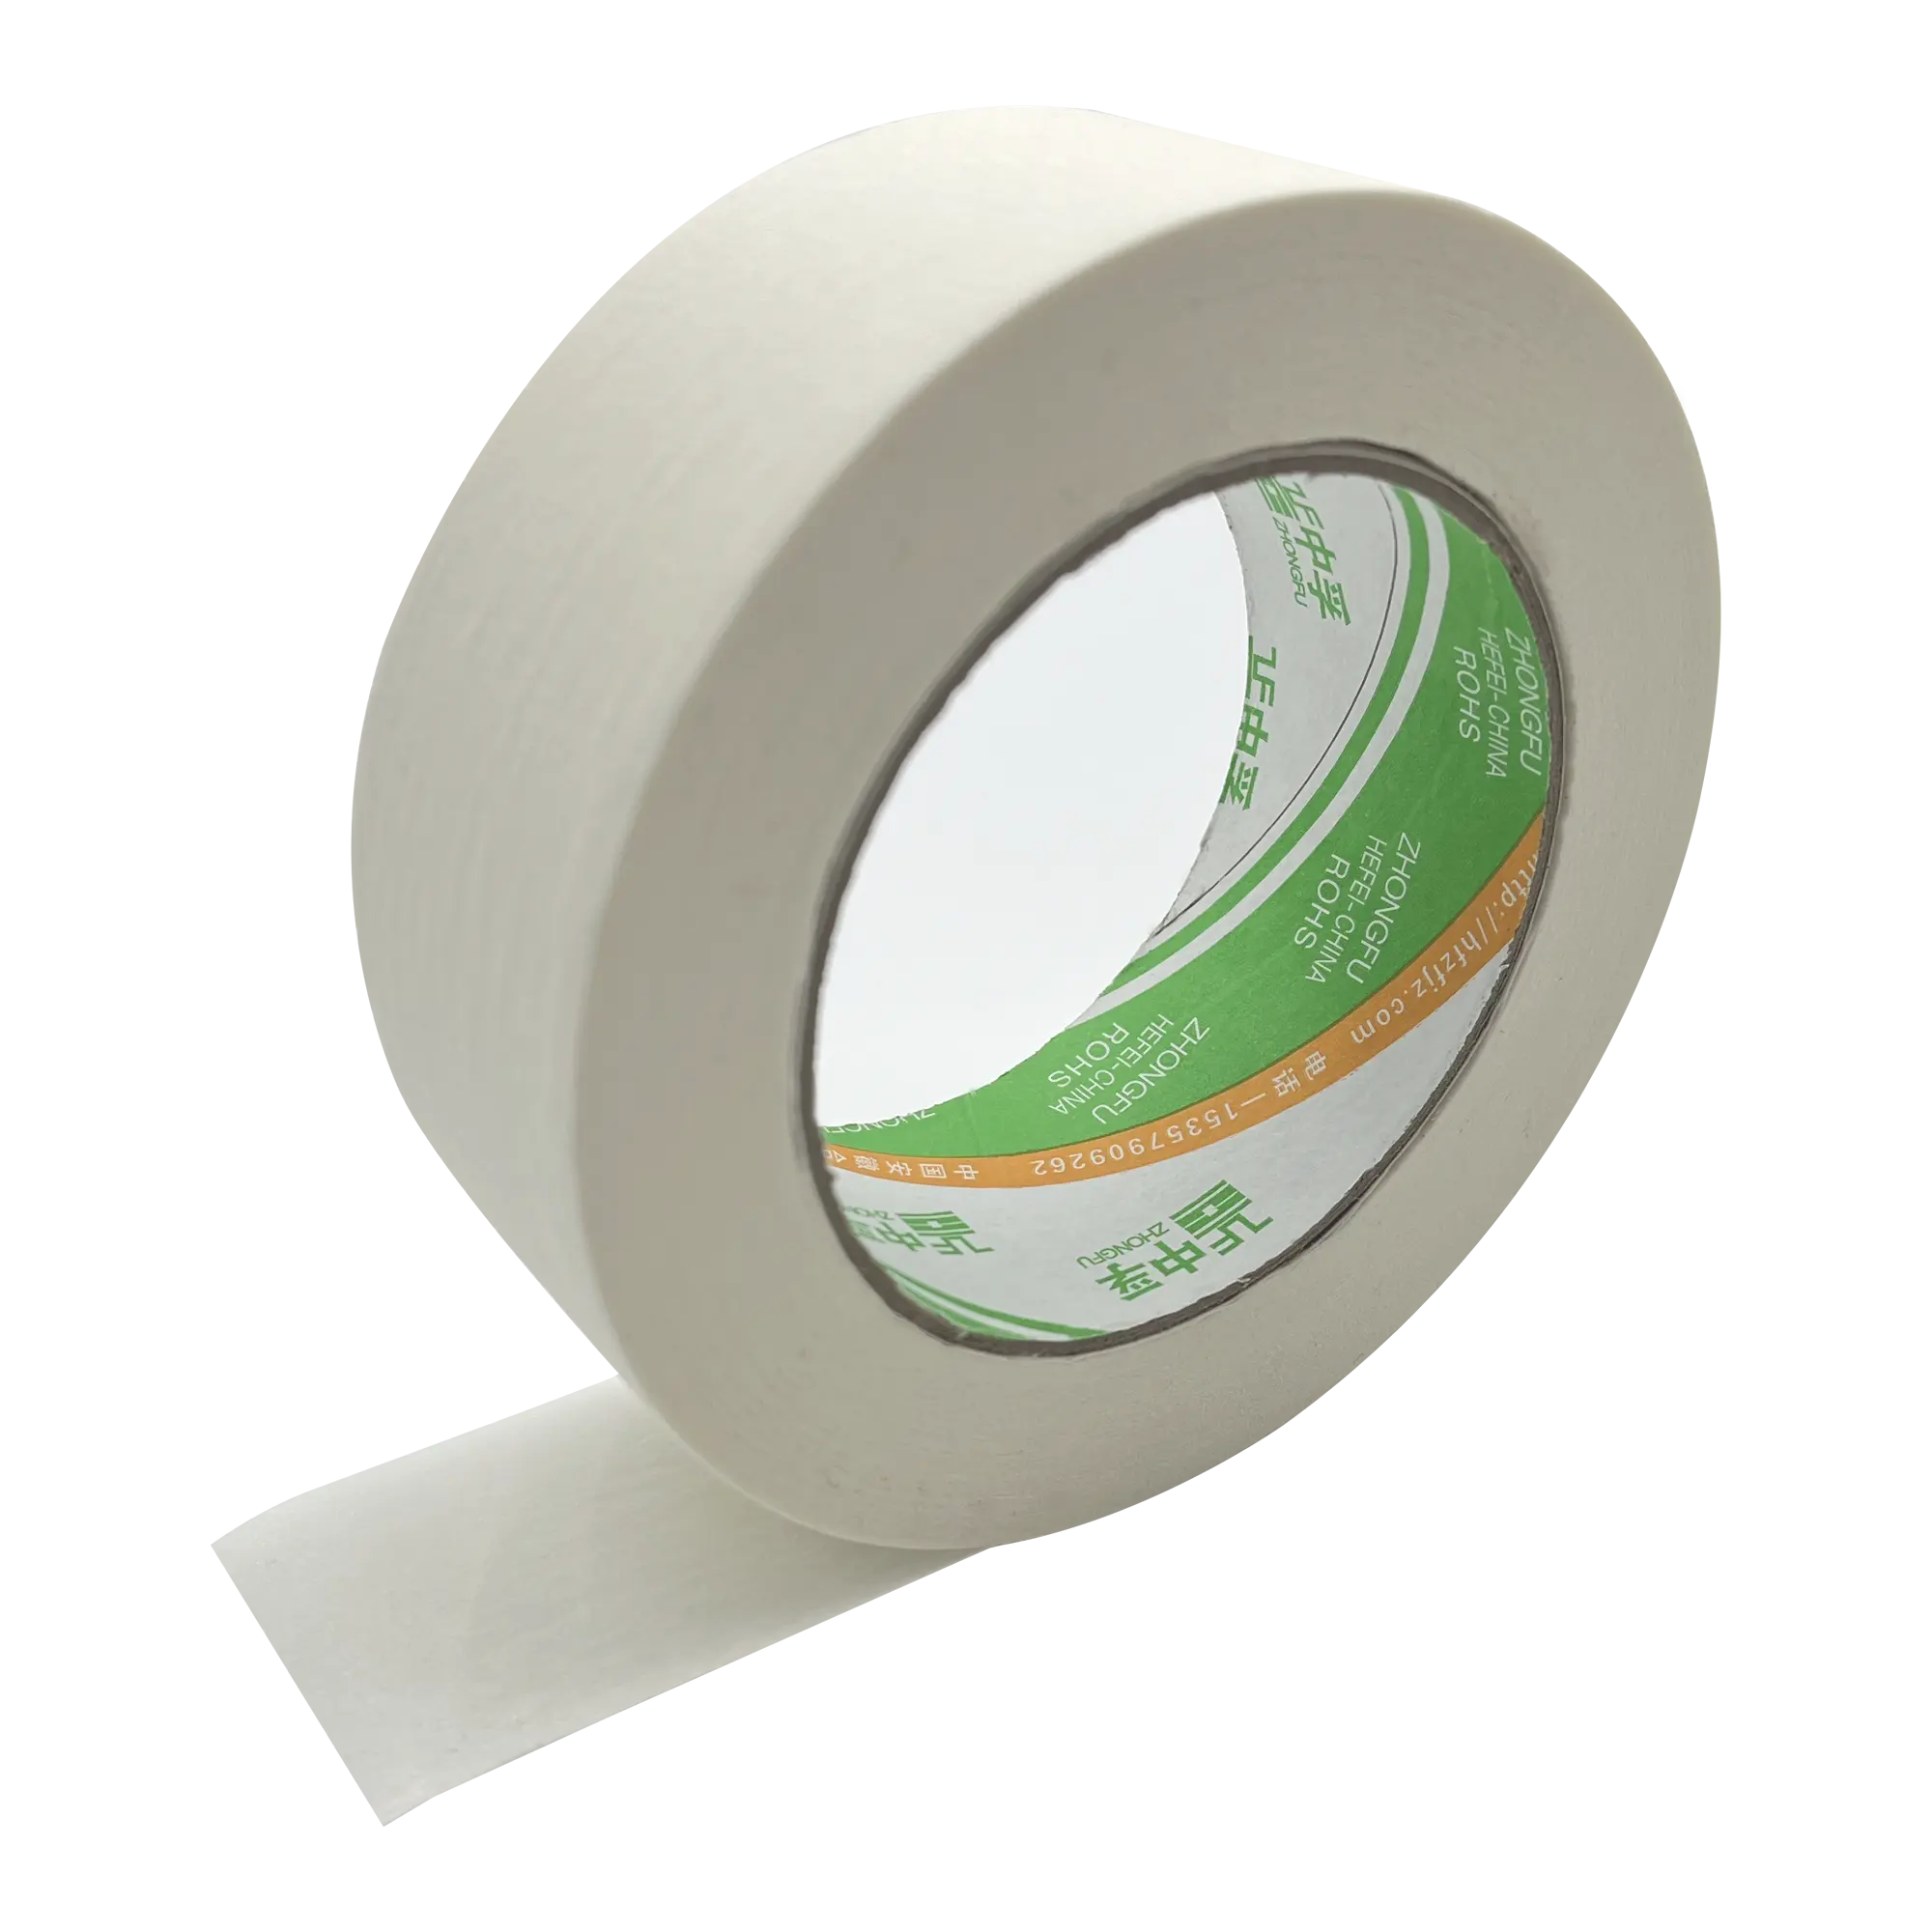 Zf nhà máy bán hàng trực tiếp tùy chỉnh tự động refinish sơn masking tape Băng Sơn Băng